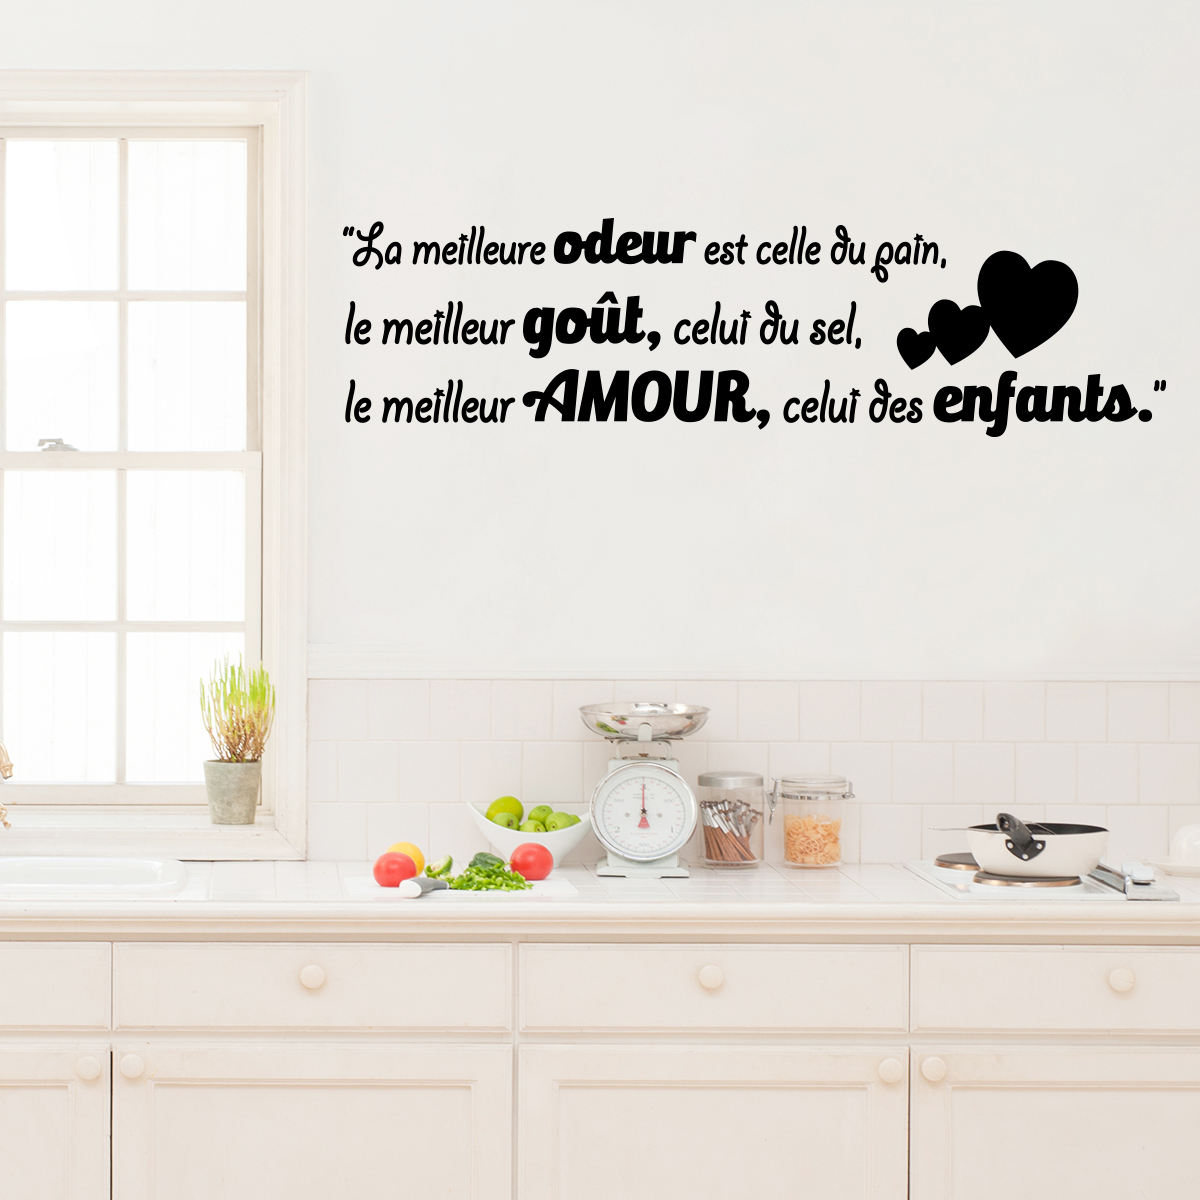 Wall sticker quote kitchen le meilleur amour, celui des enfants ...  decoration